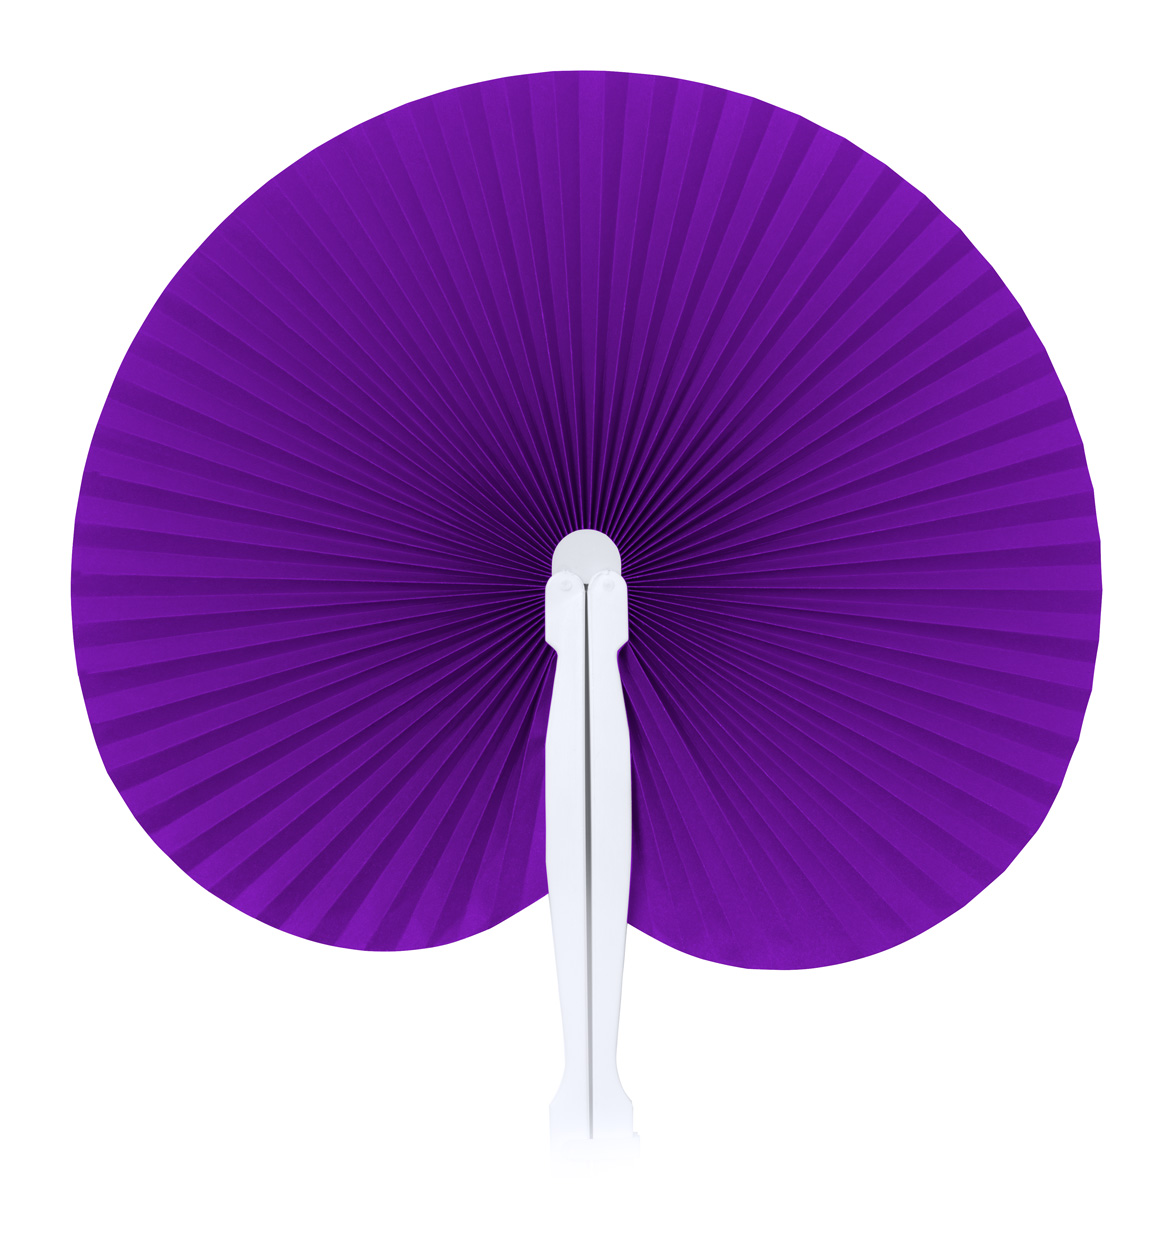 Stilo fan - violet